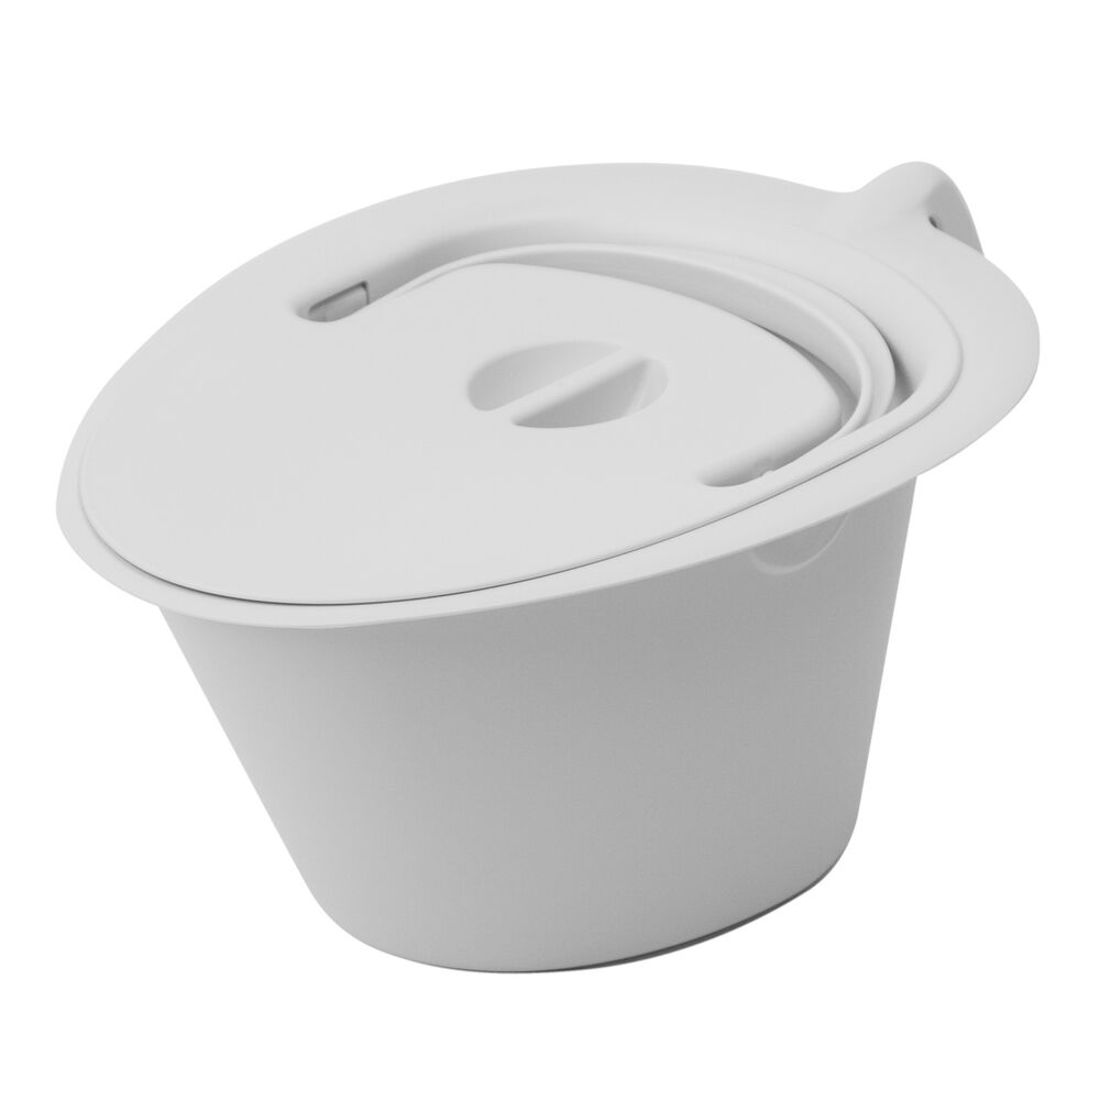 Etac Swift freestanding toilet seat pan